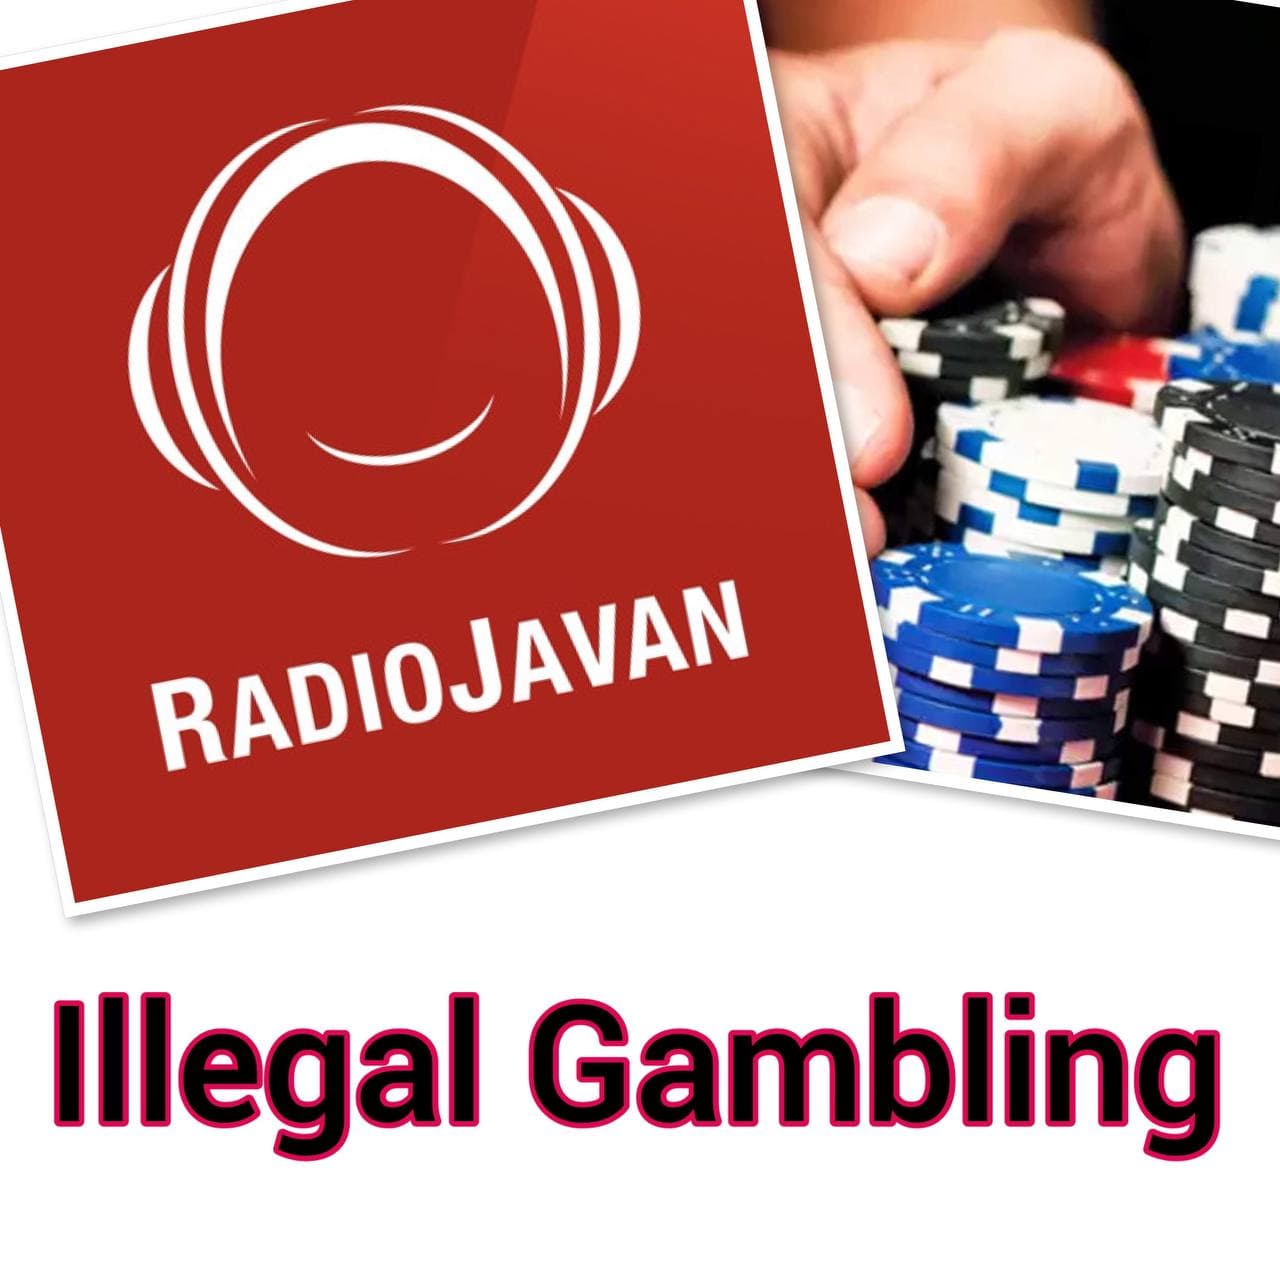 رادیو جوان چگونه پول سیاه قمار غیرقانونی را به آمریکا انتقال میدهد؟